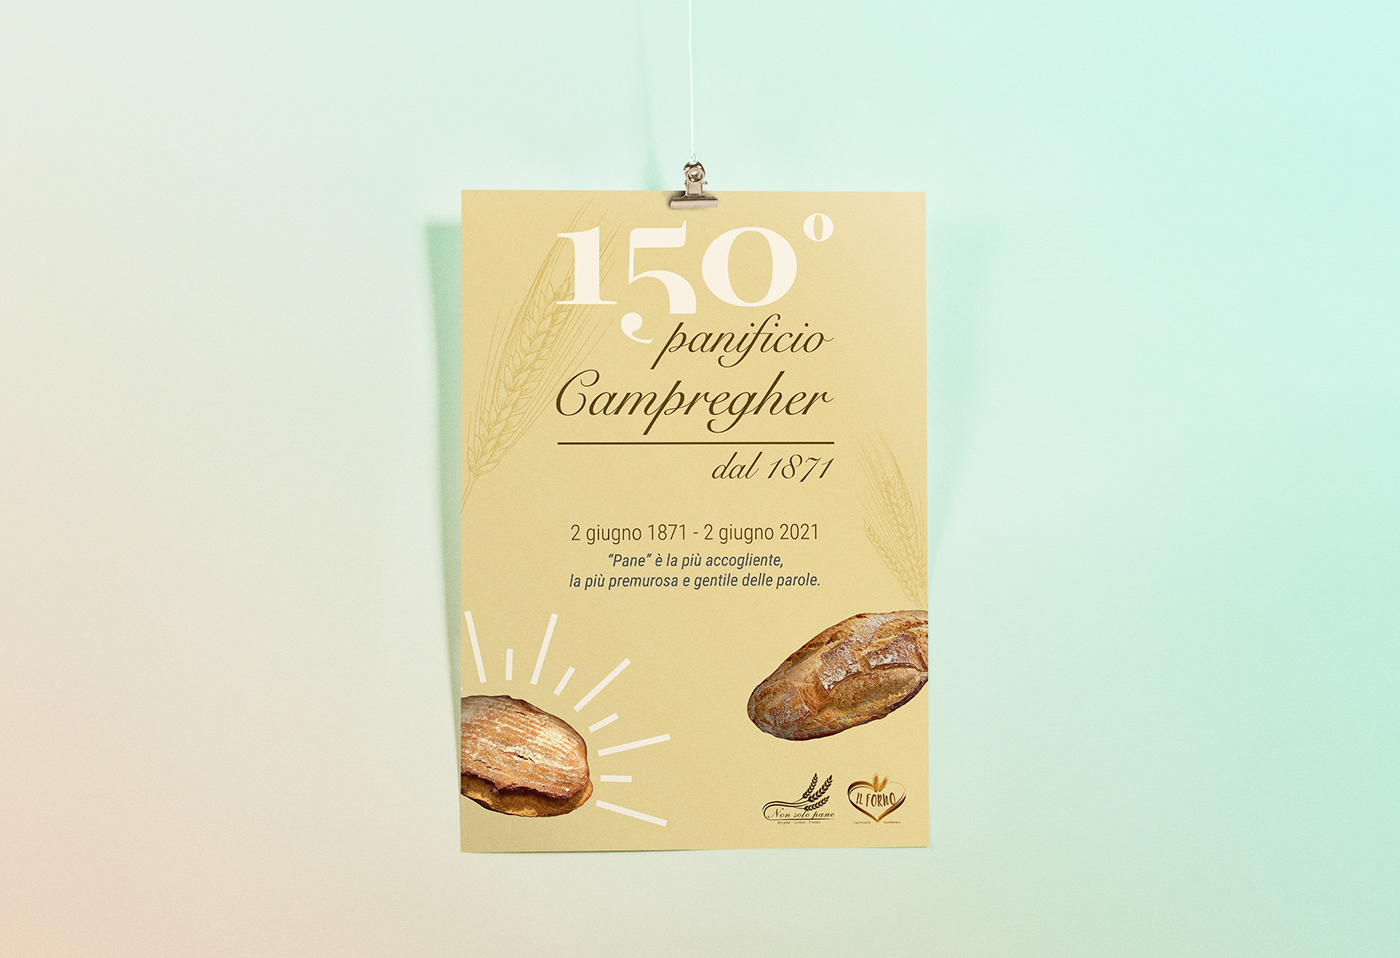 150° anniversario anniversary bakery campregher panificio poster trentino